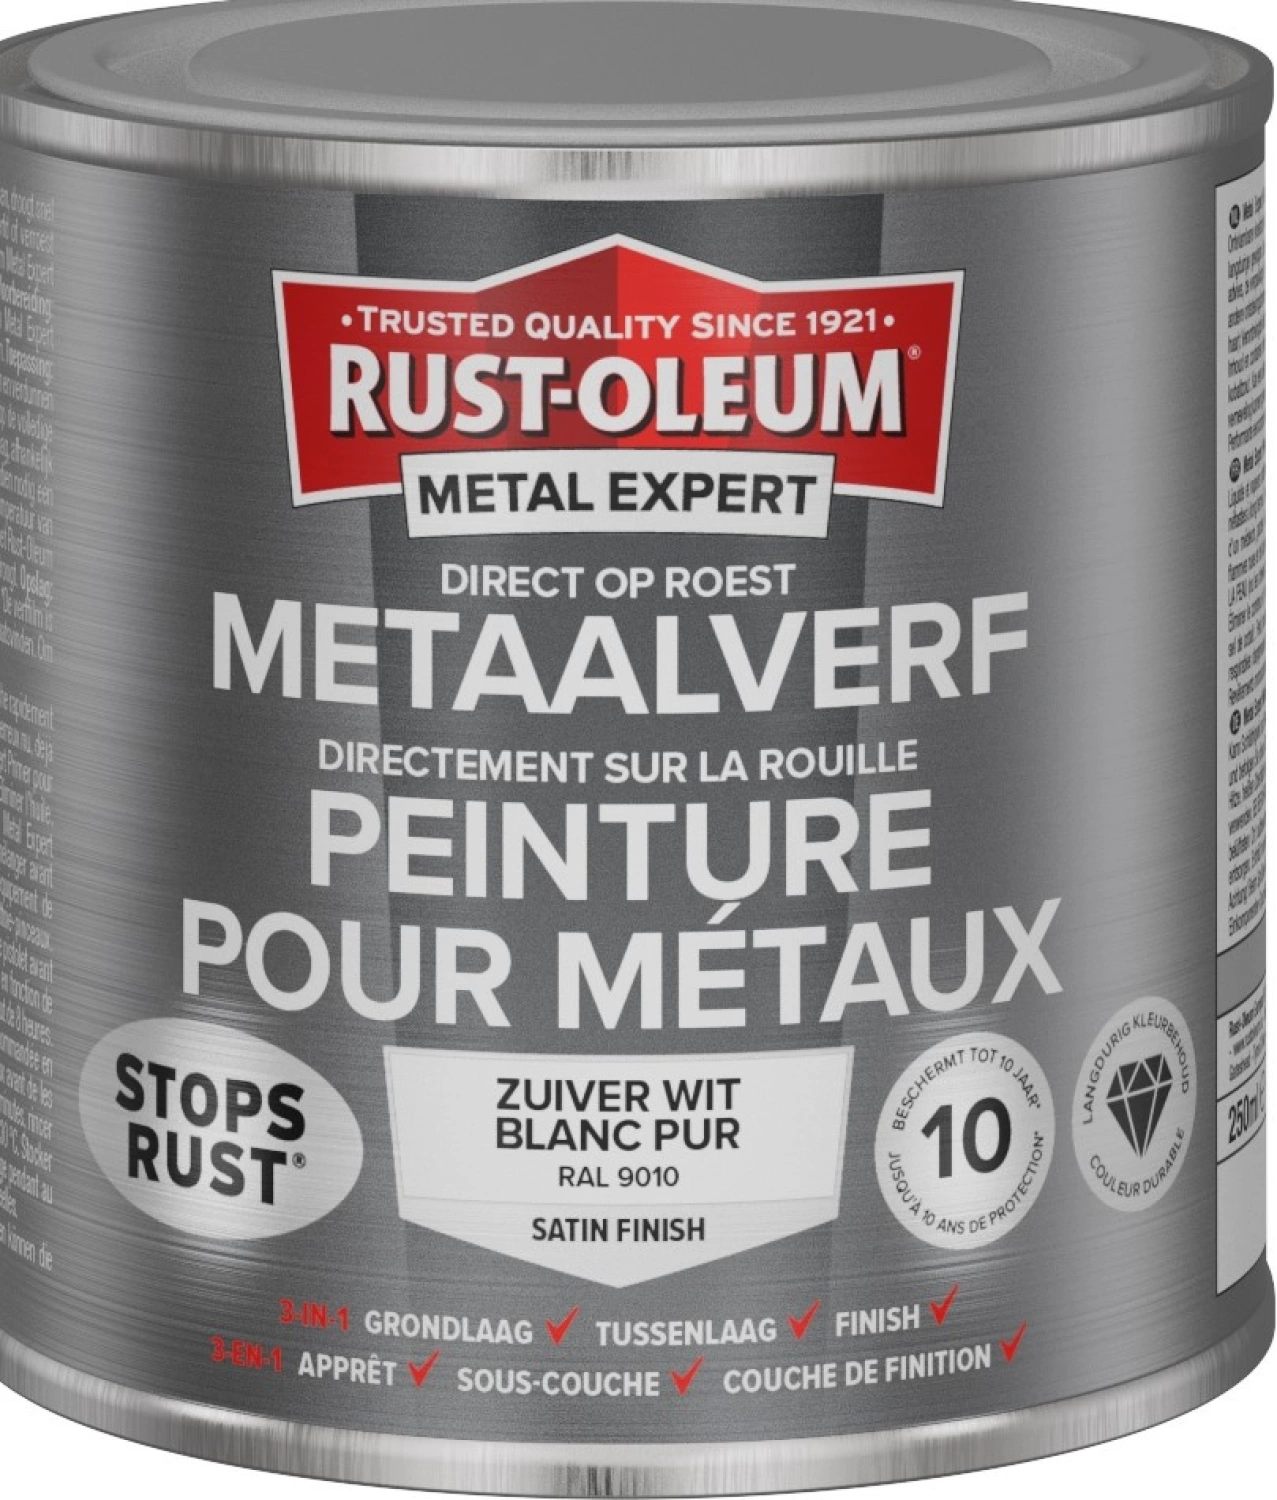 Rust-Oleum MetalExpert Zijdeglans - RAL 9010 zuiverwit - 0,75L-image